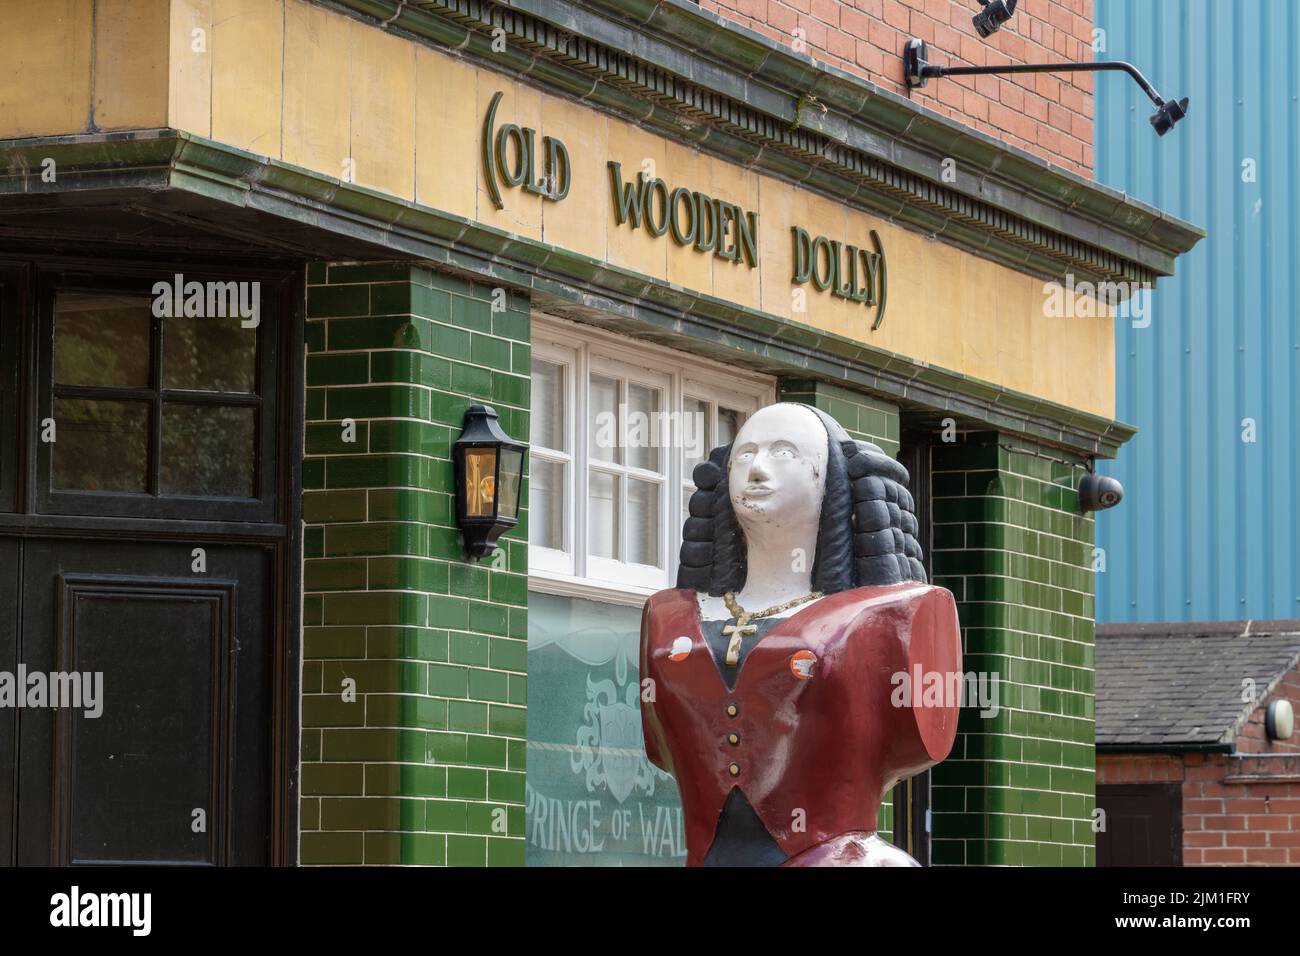 Vecchia testa di albero di una figura femminile, all'esterno del pub Prince of Wales, North Shields, North Tyneside, Regno Unito, noto anche come The Old Wooden Dolly. Foto Stock